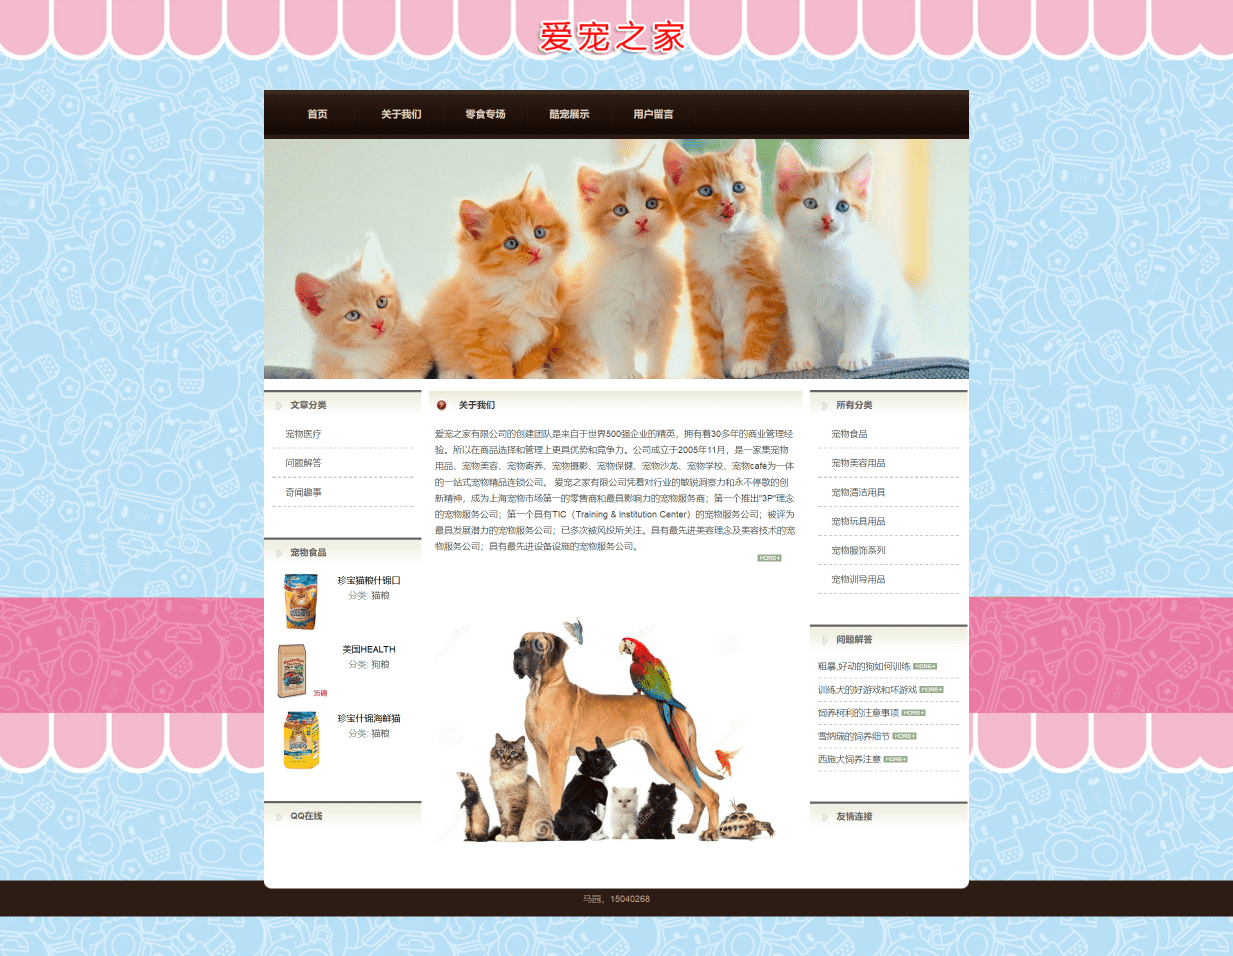 【网页设计与制作成品】 静态宠物网站——蓝色版爱宠之家(HTML+CSS)